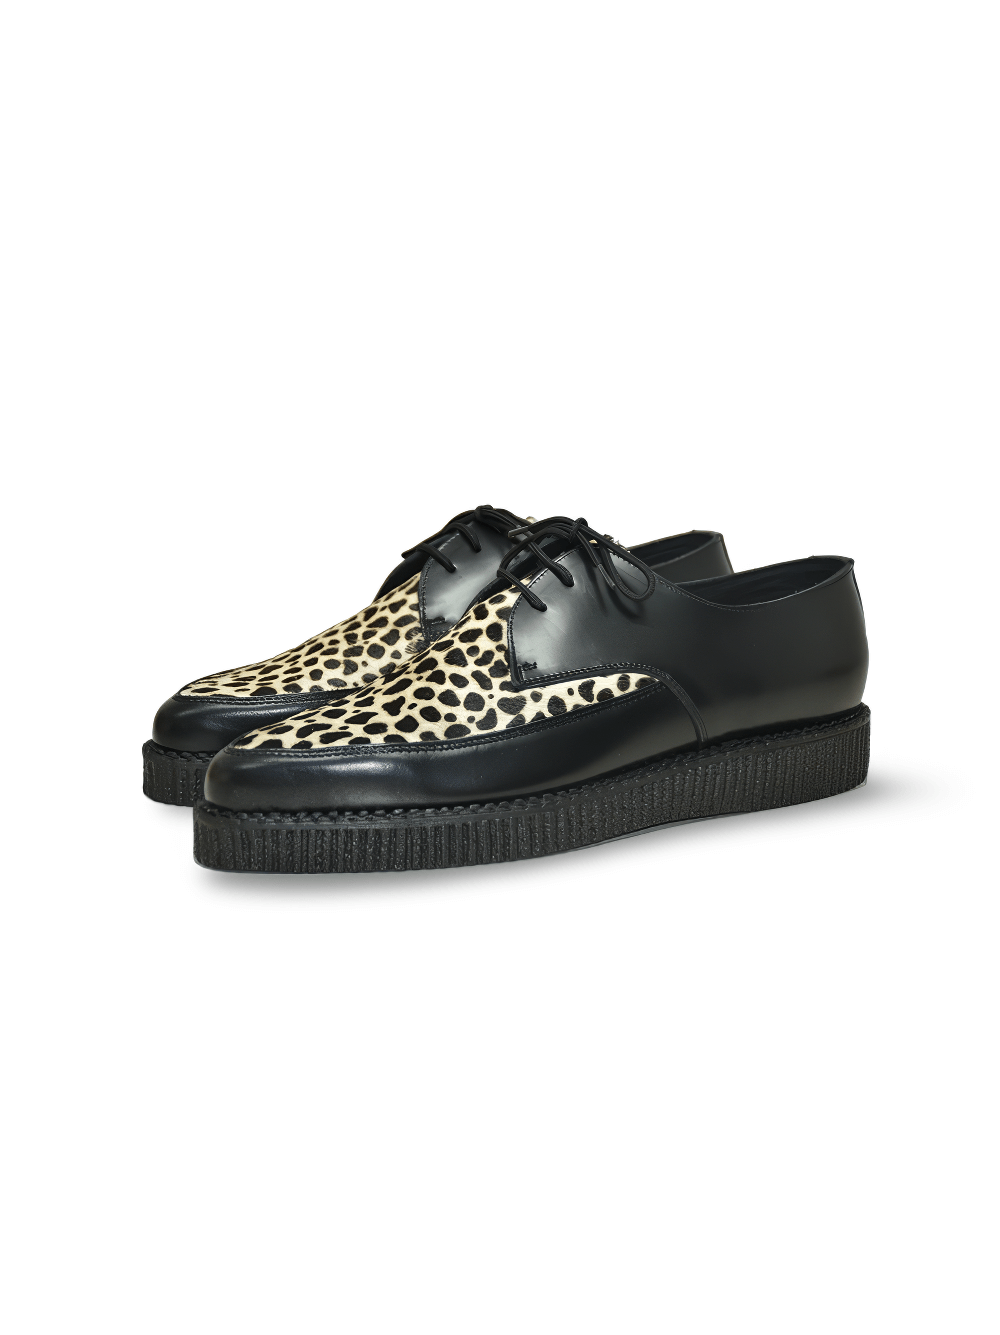 Chaussures Creepers pointues à imprimé léopard distinctif en fourrure